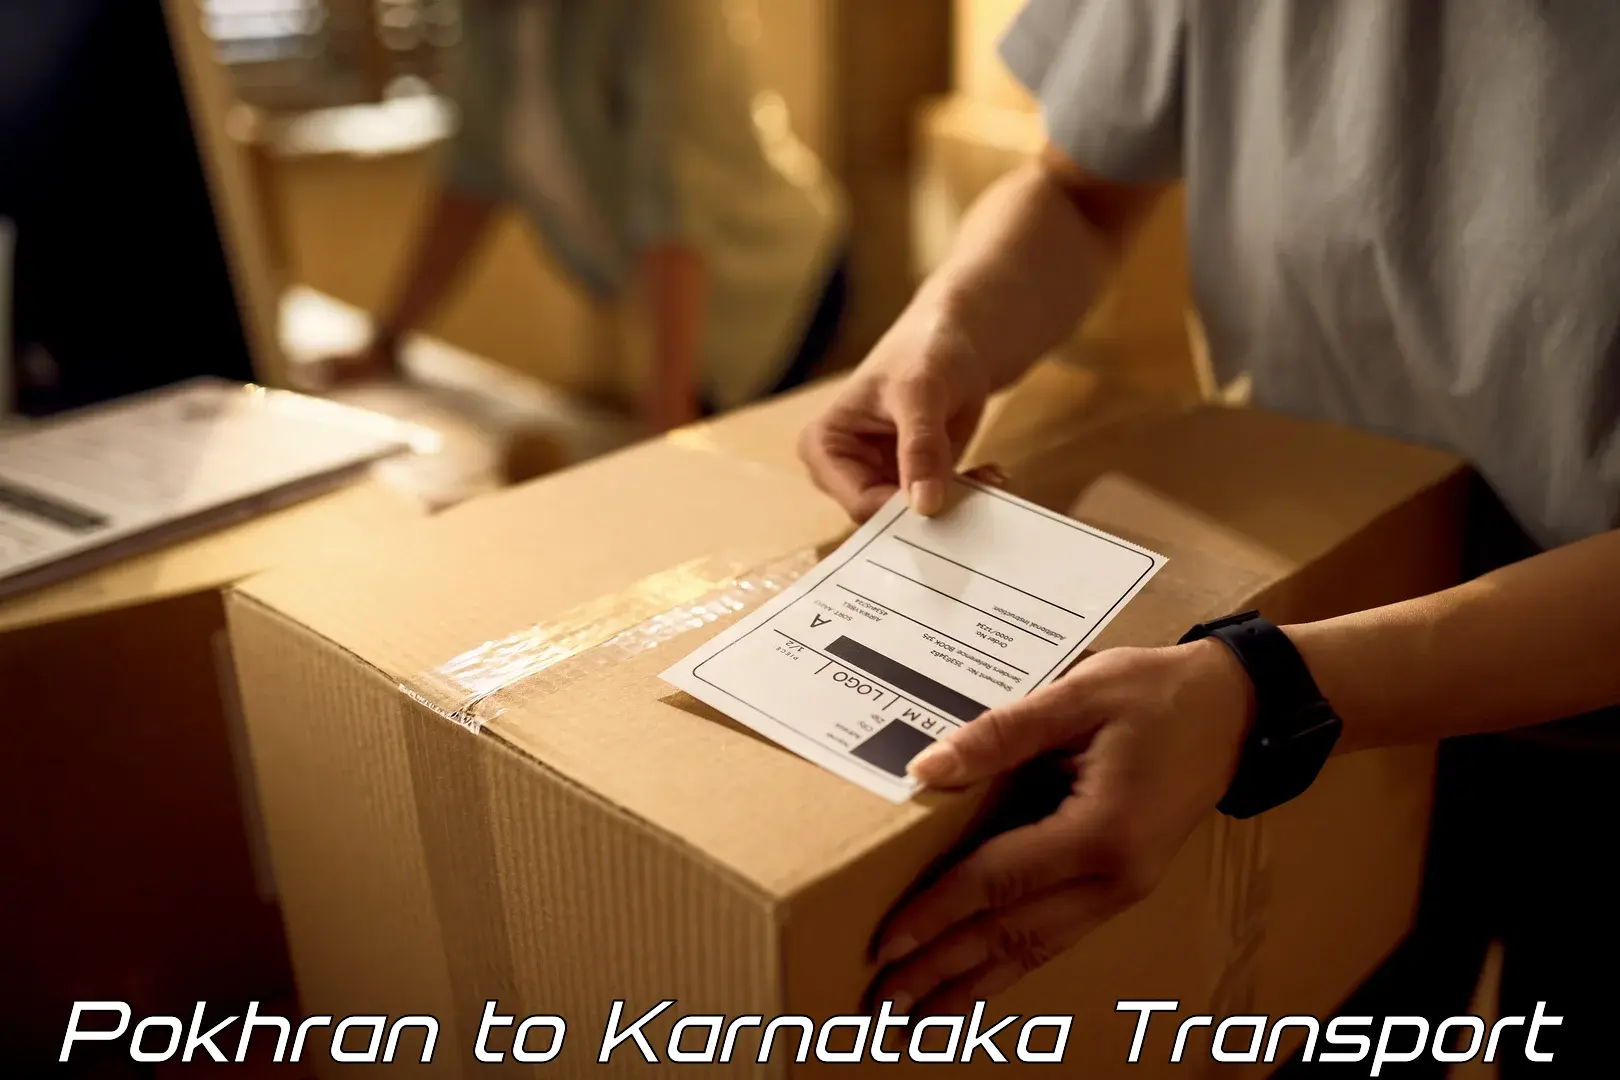 Shipping partner Pokhran to Karnataka